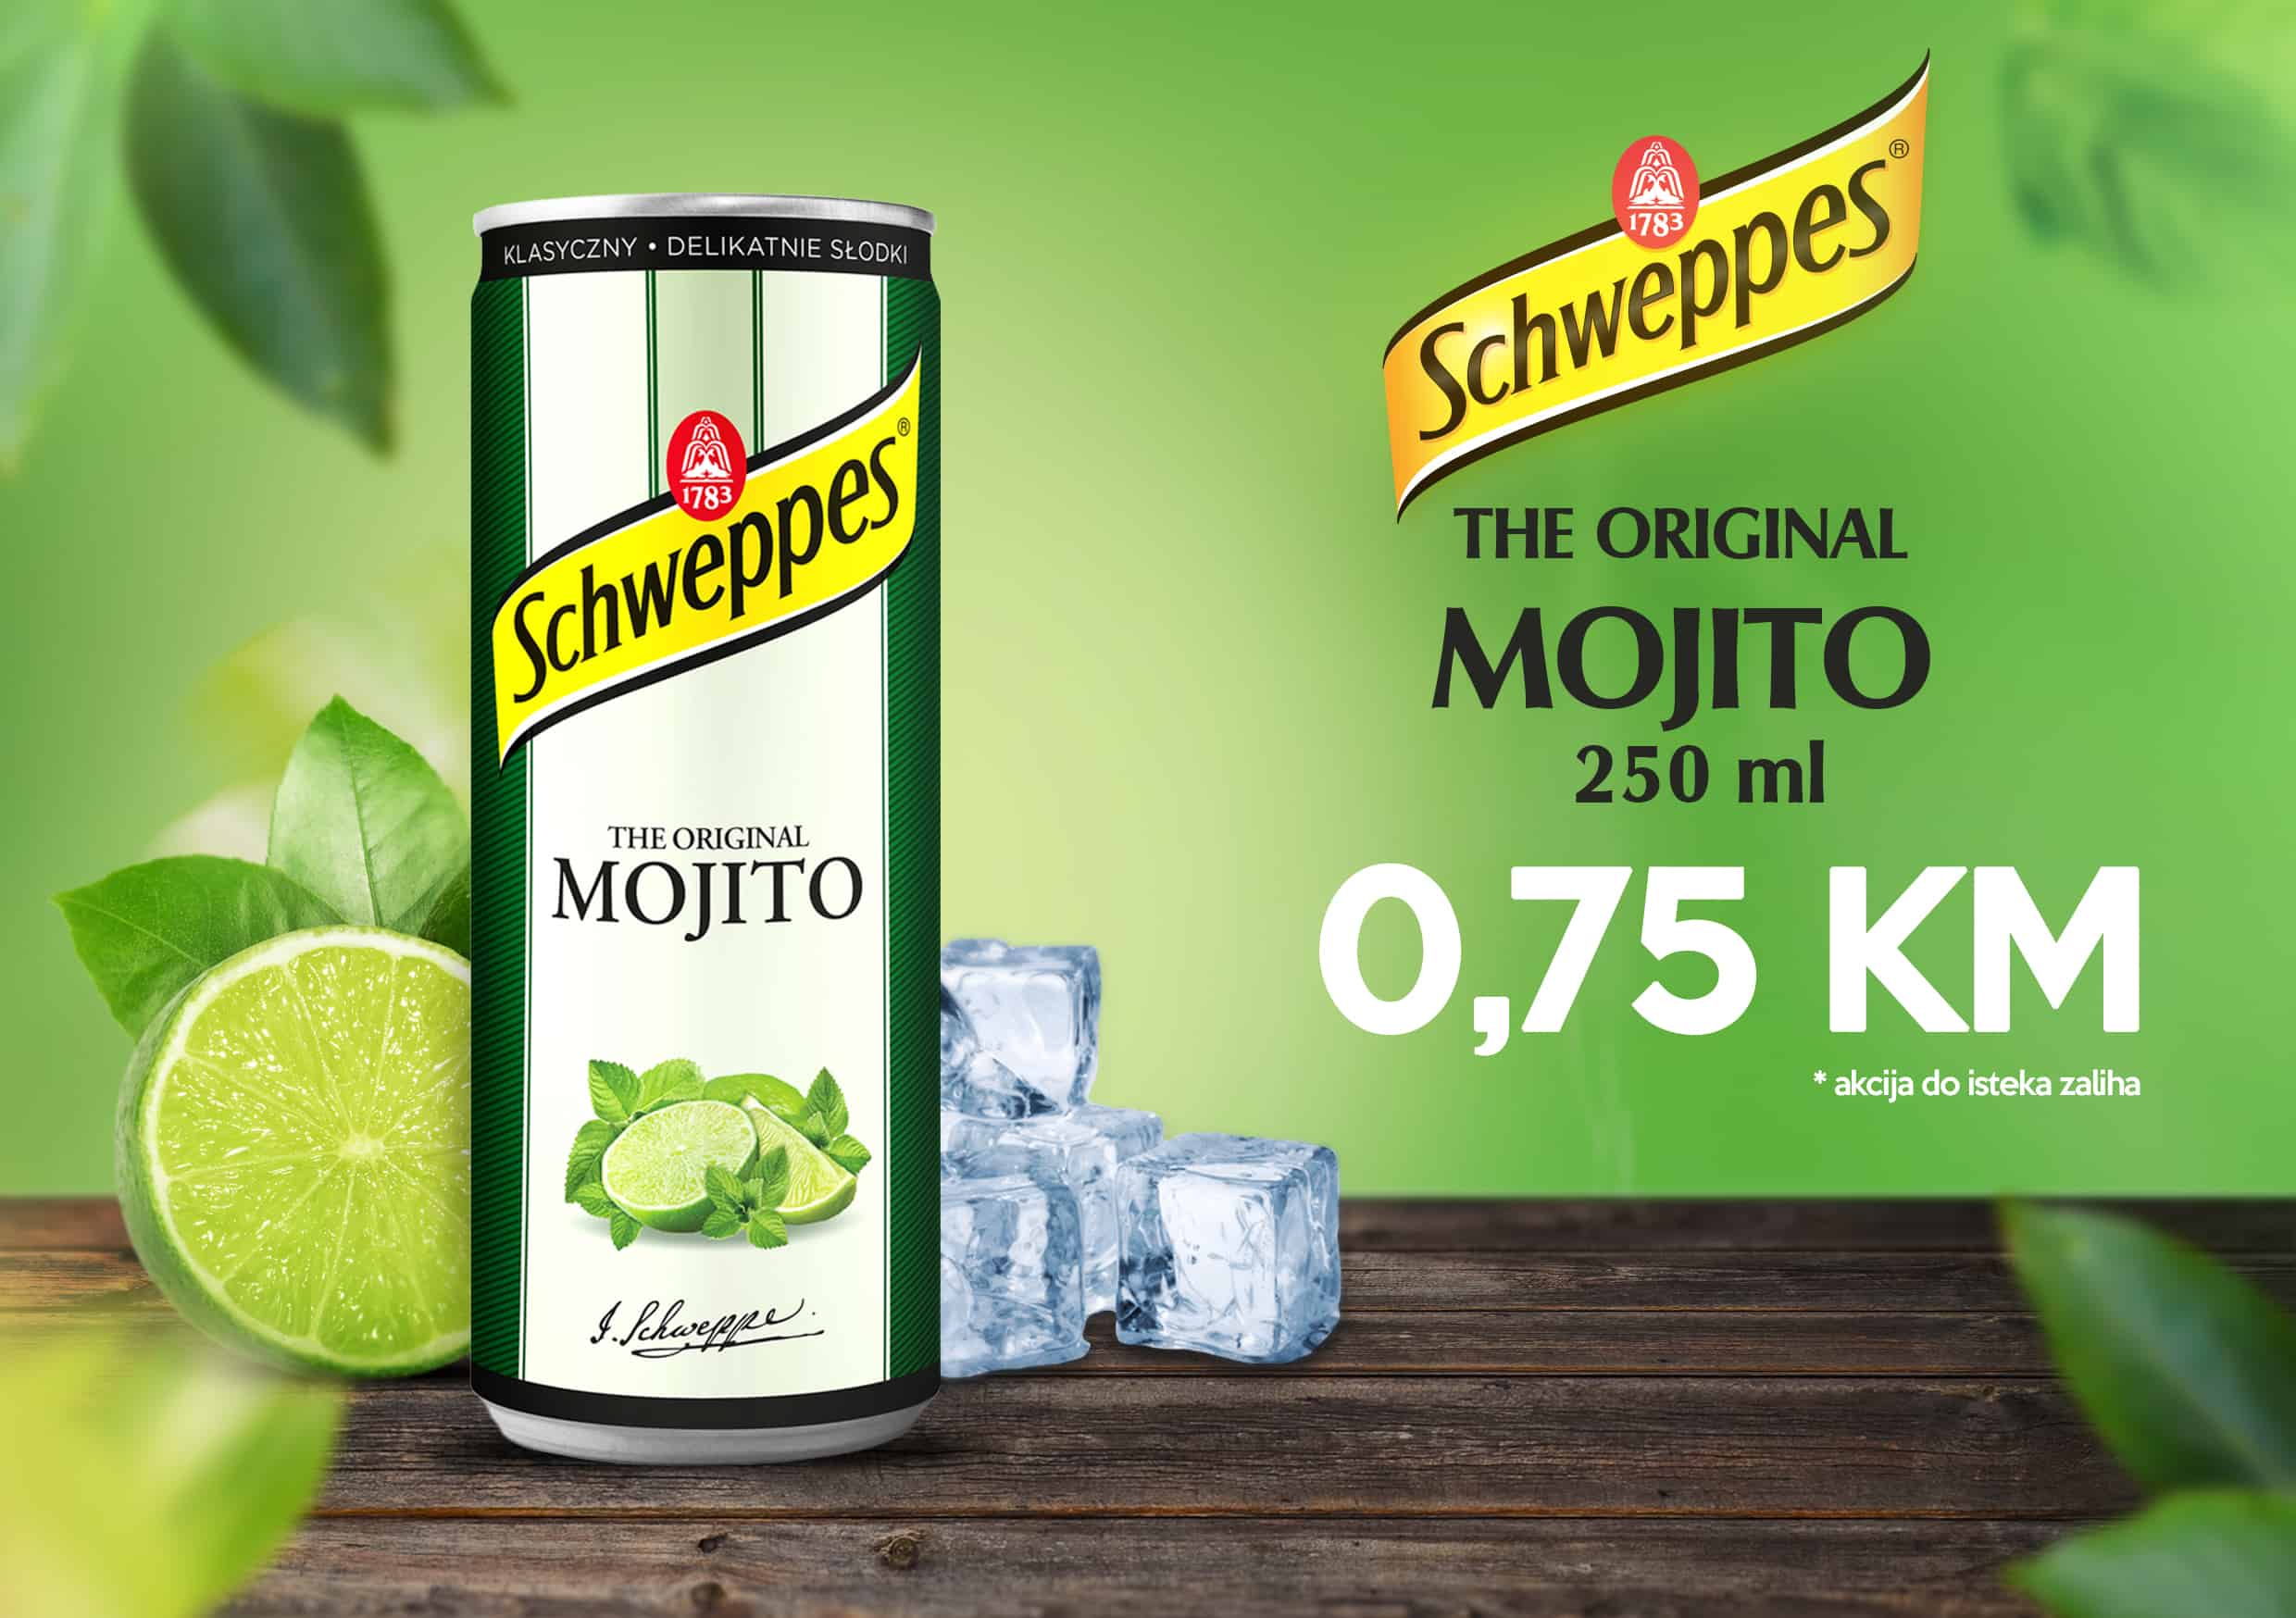 Schweppes The Original MOJITTO 250 ml samo 0,75 KM! 